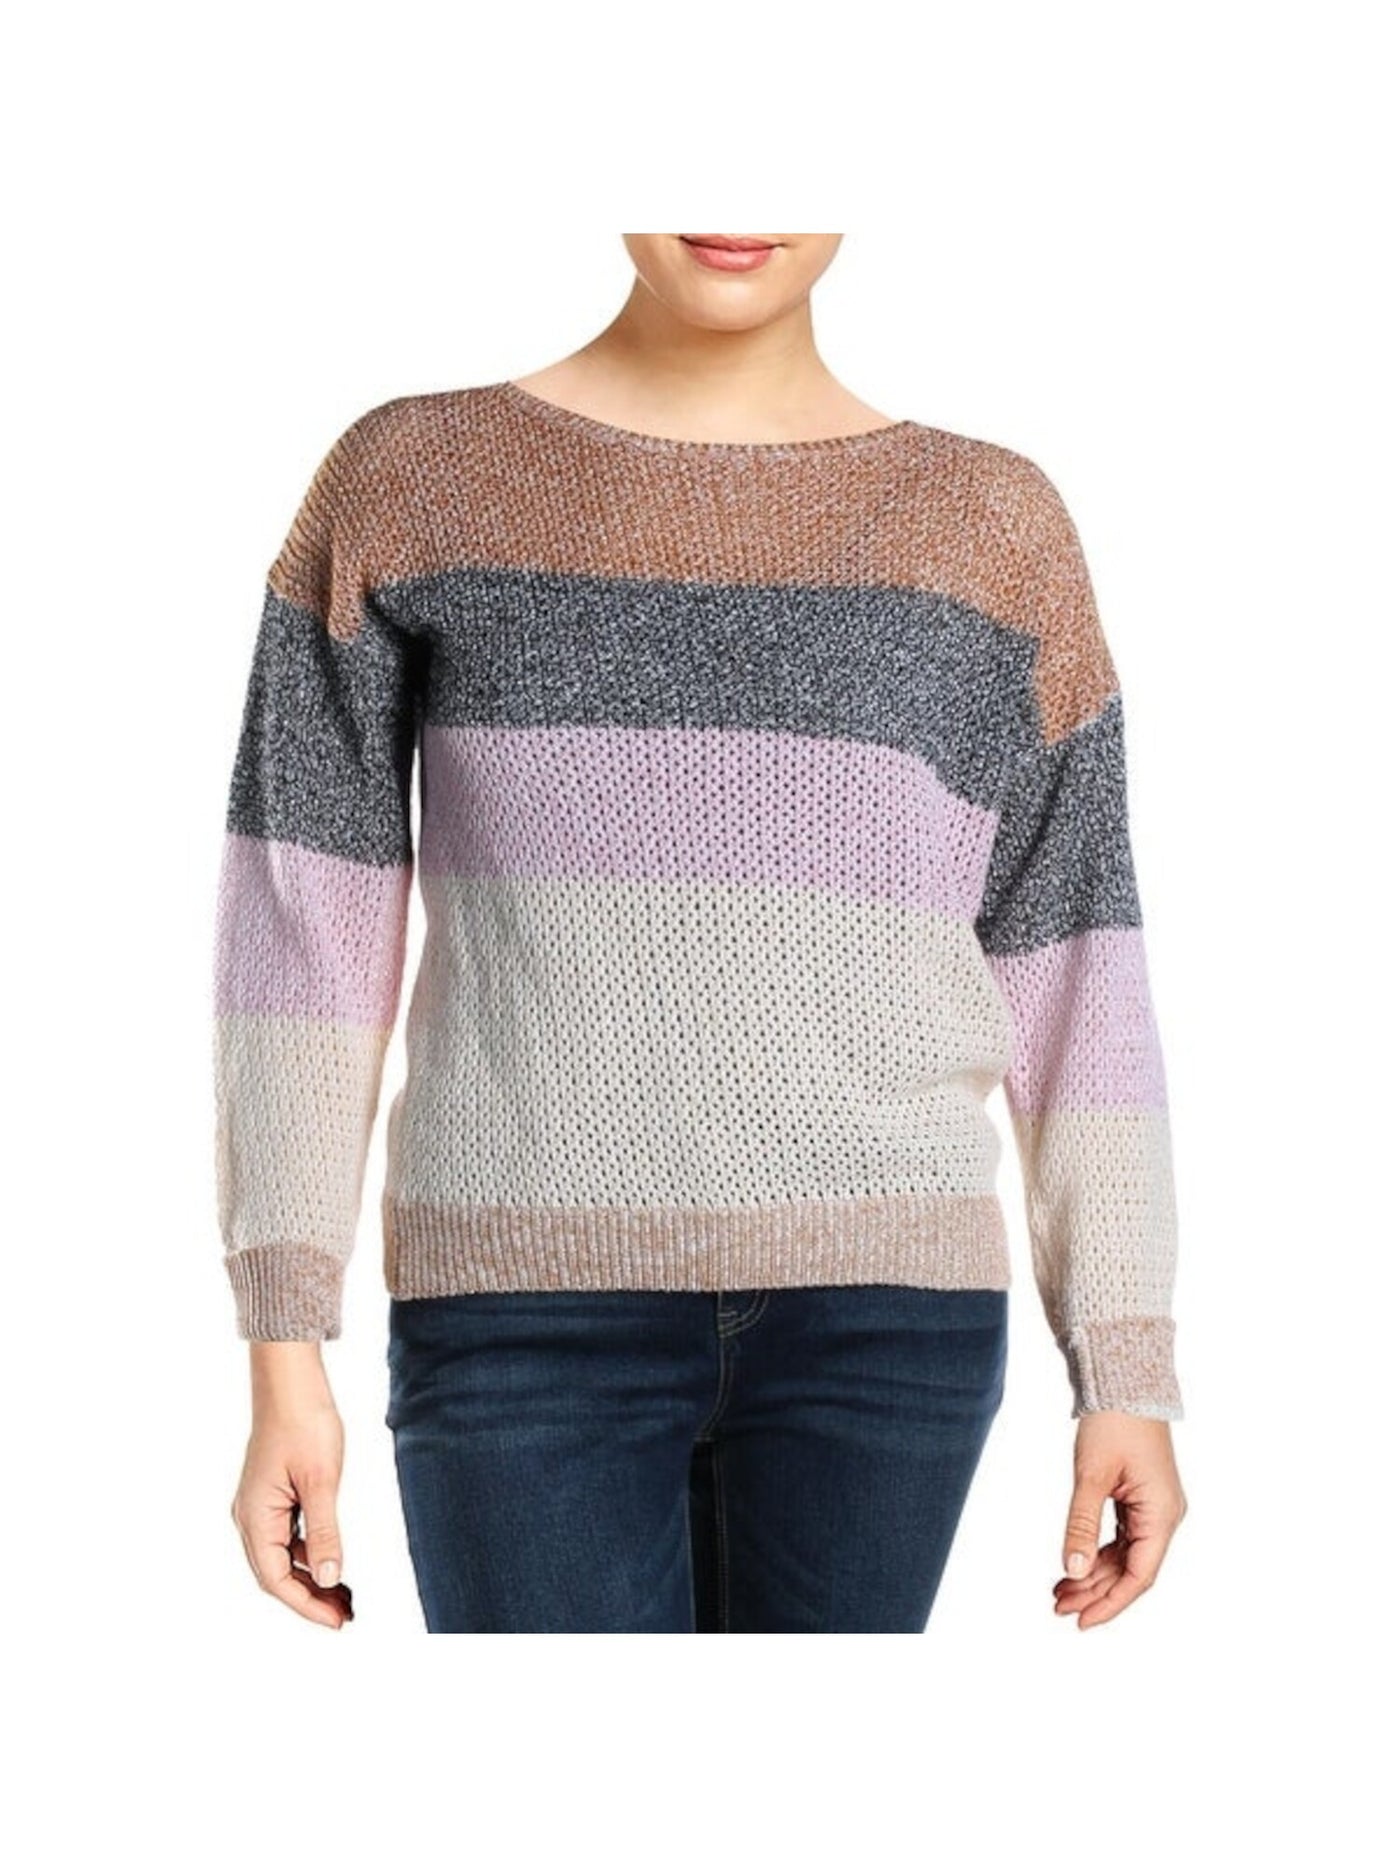 JOIE Womens Beige Striped Long Sleeve Jewel Neck Sweater Size: L